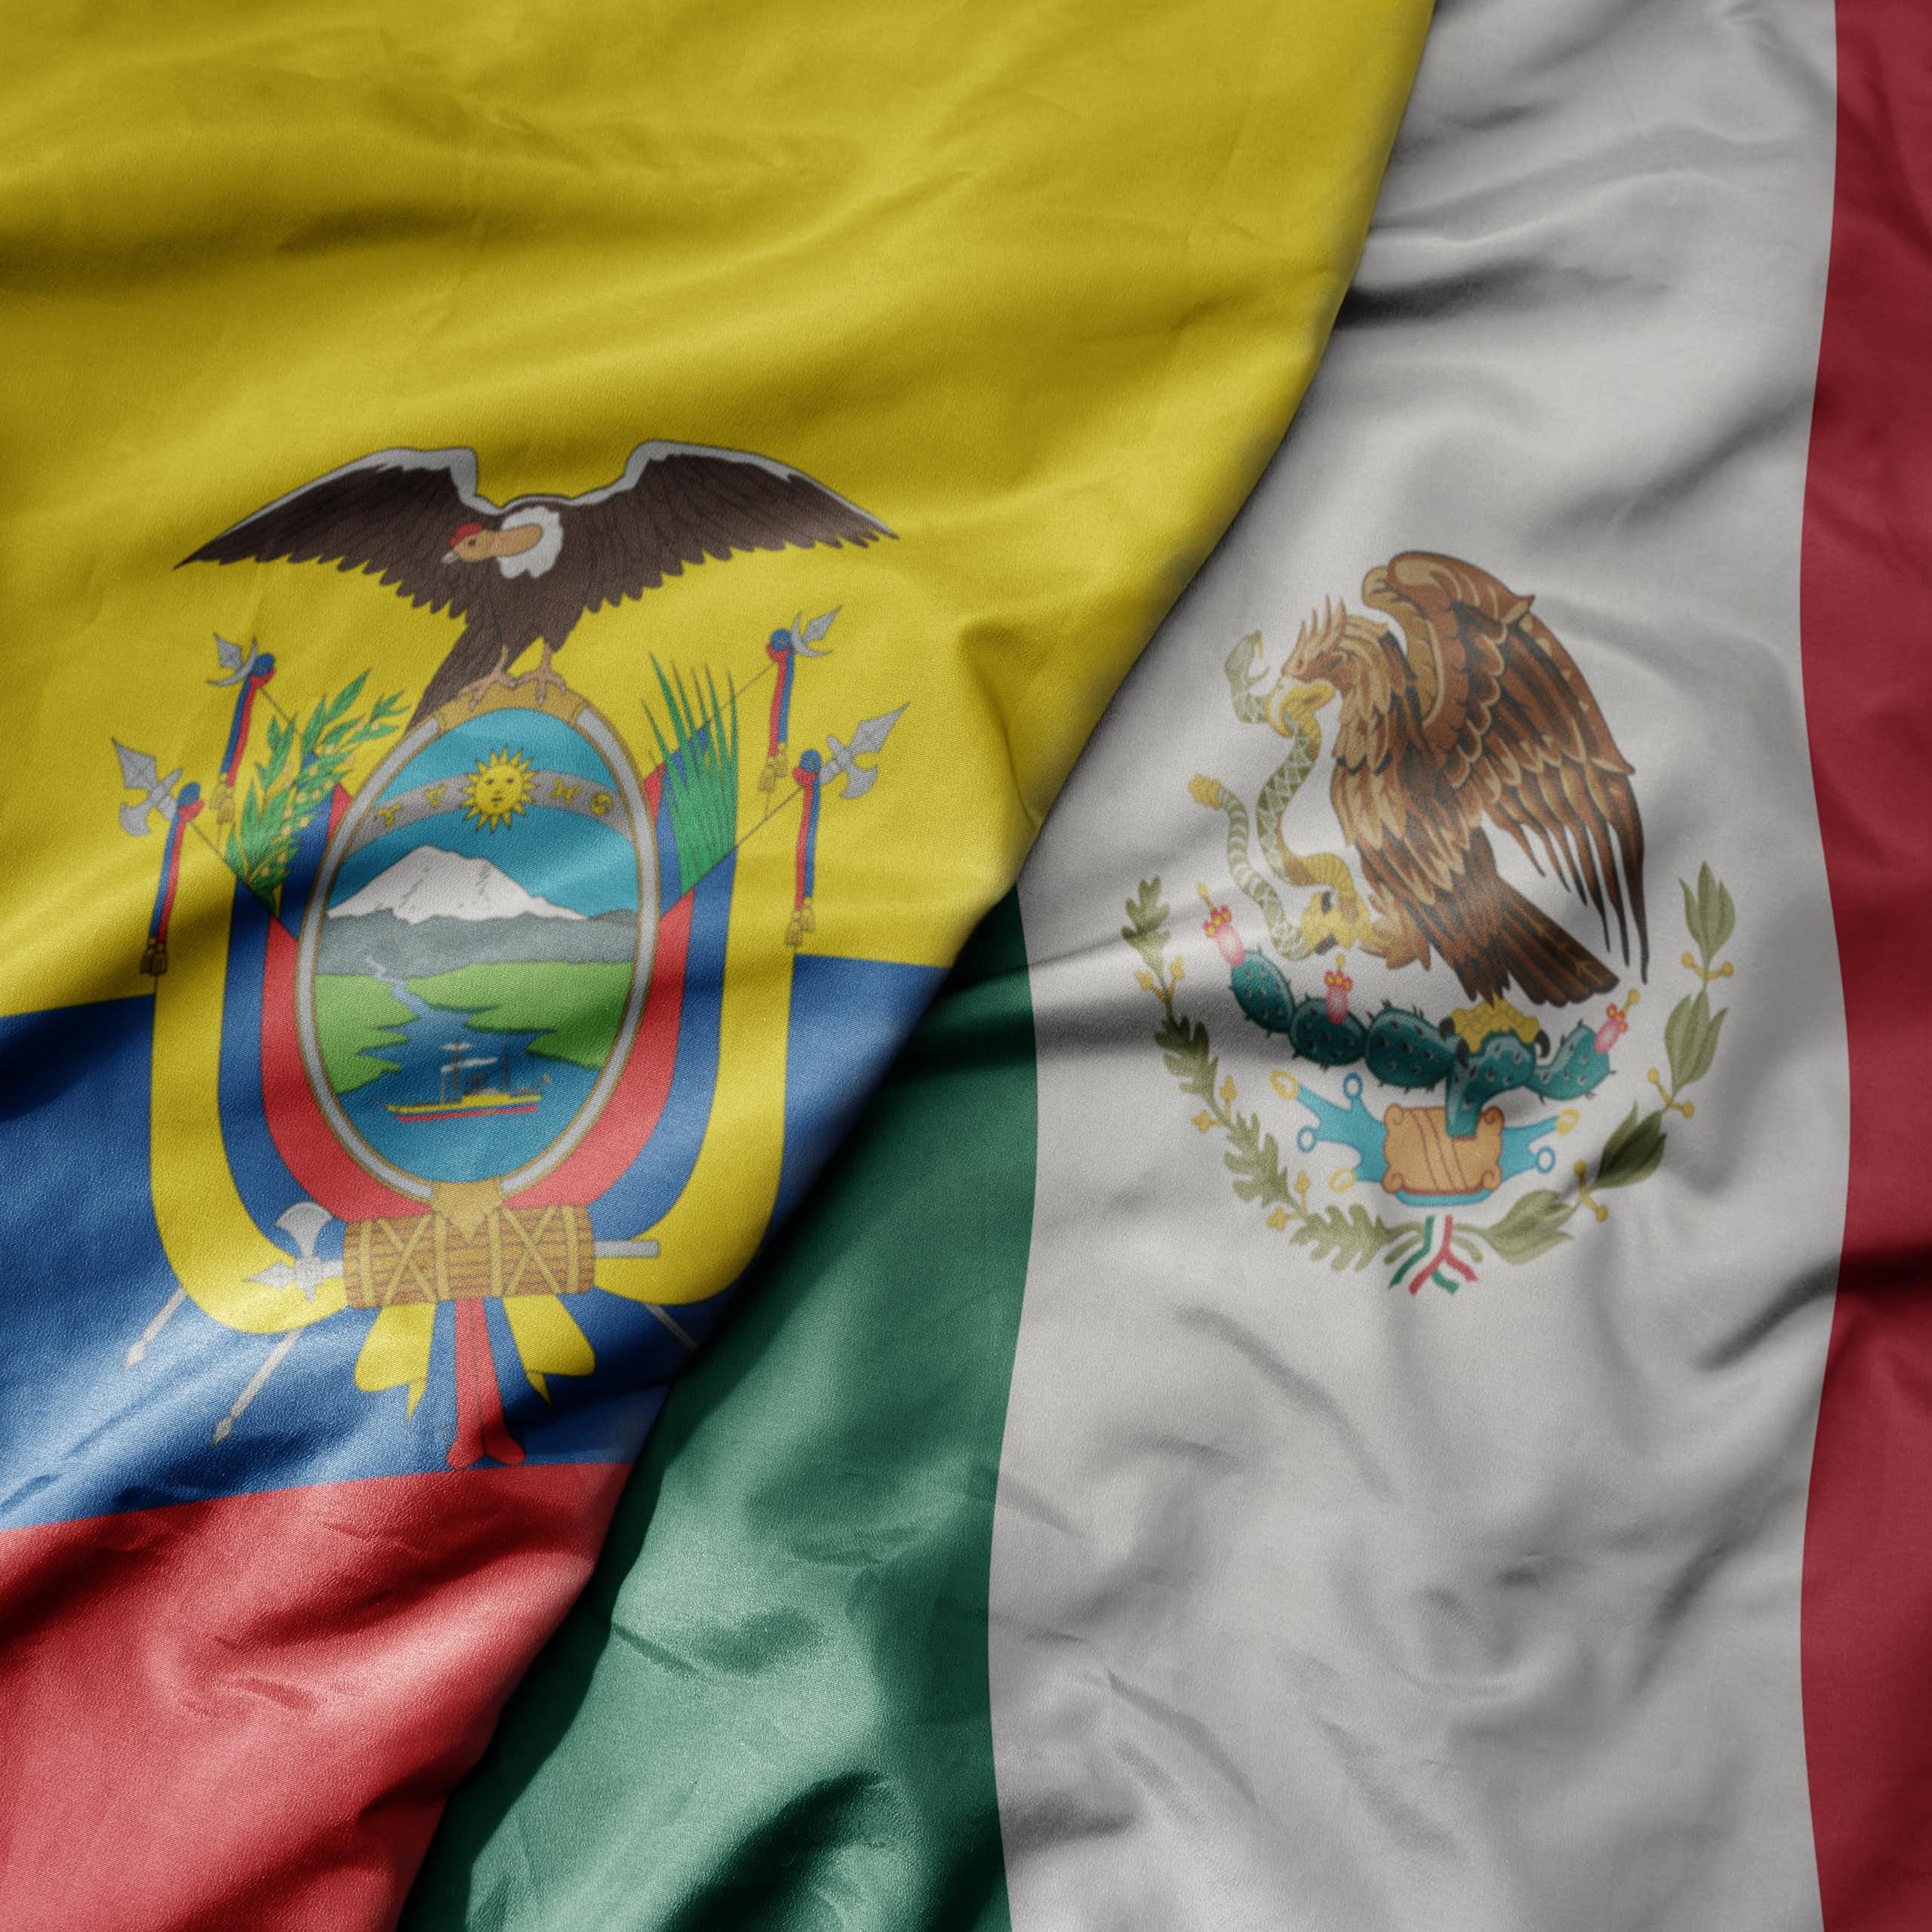 El asalto a la embajada mexicana en Ecuador y el debido respeto a las normas internacionales